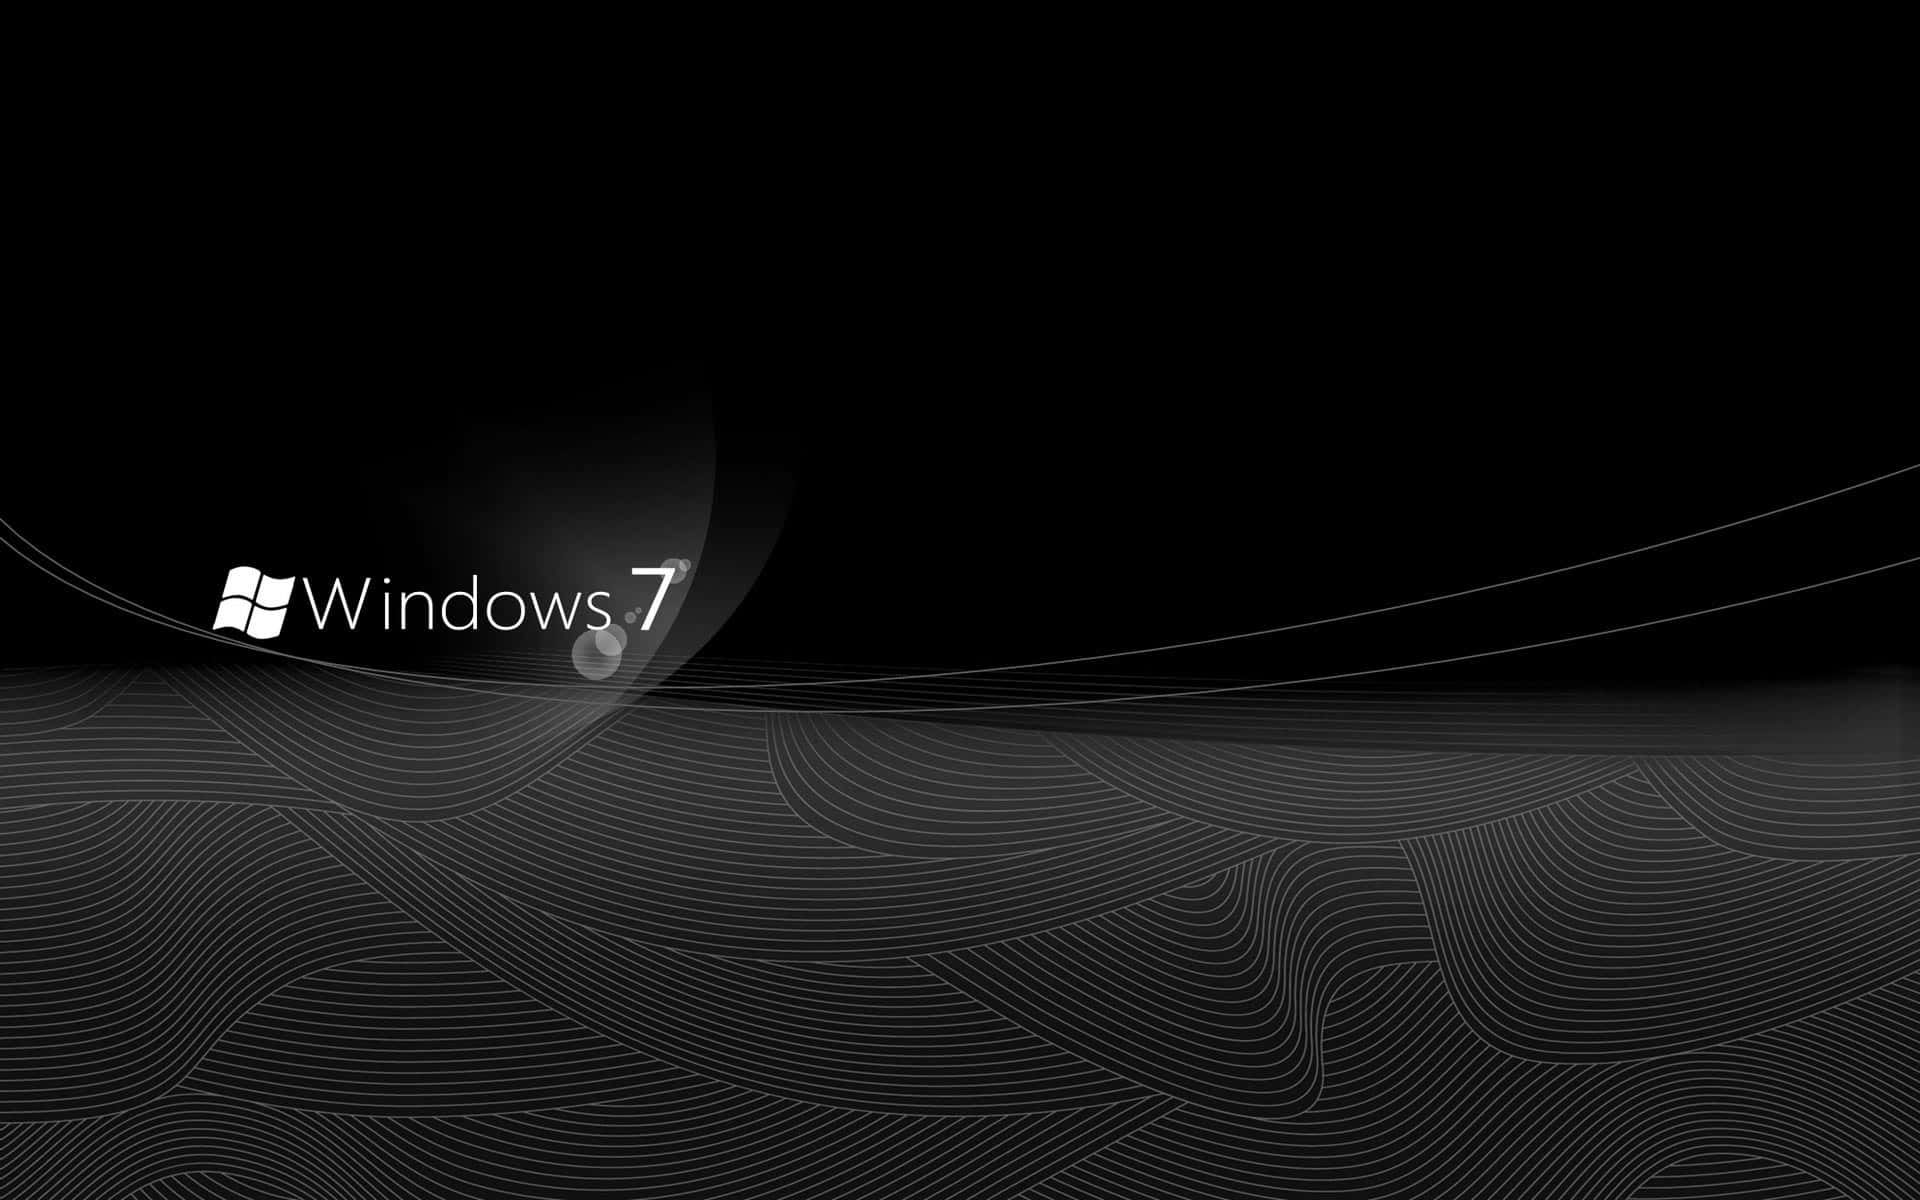 Windows7 Bakgrundsbilder, Svart Och Vitt